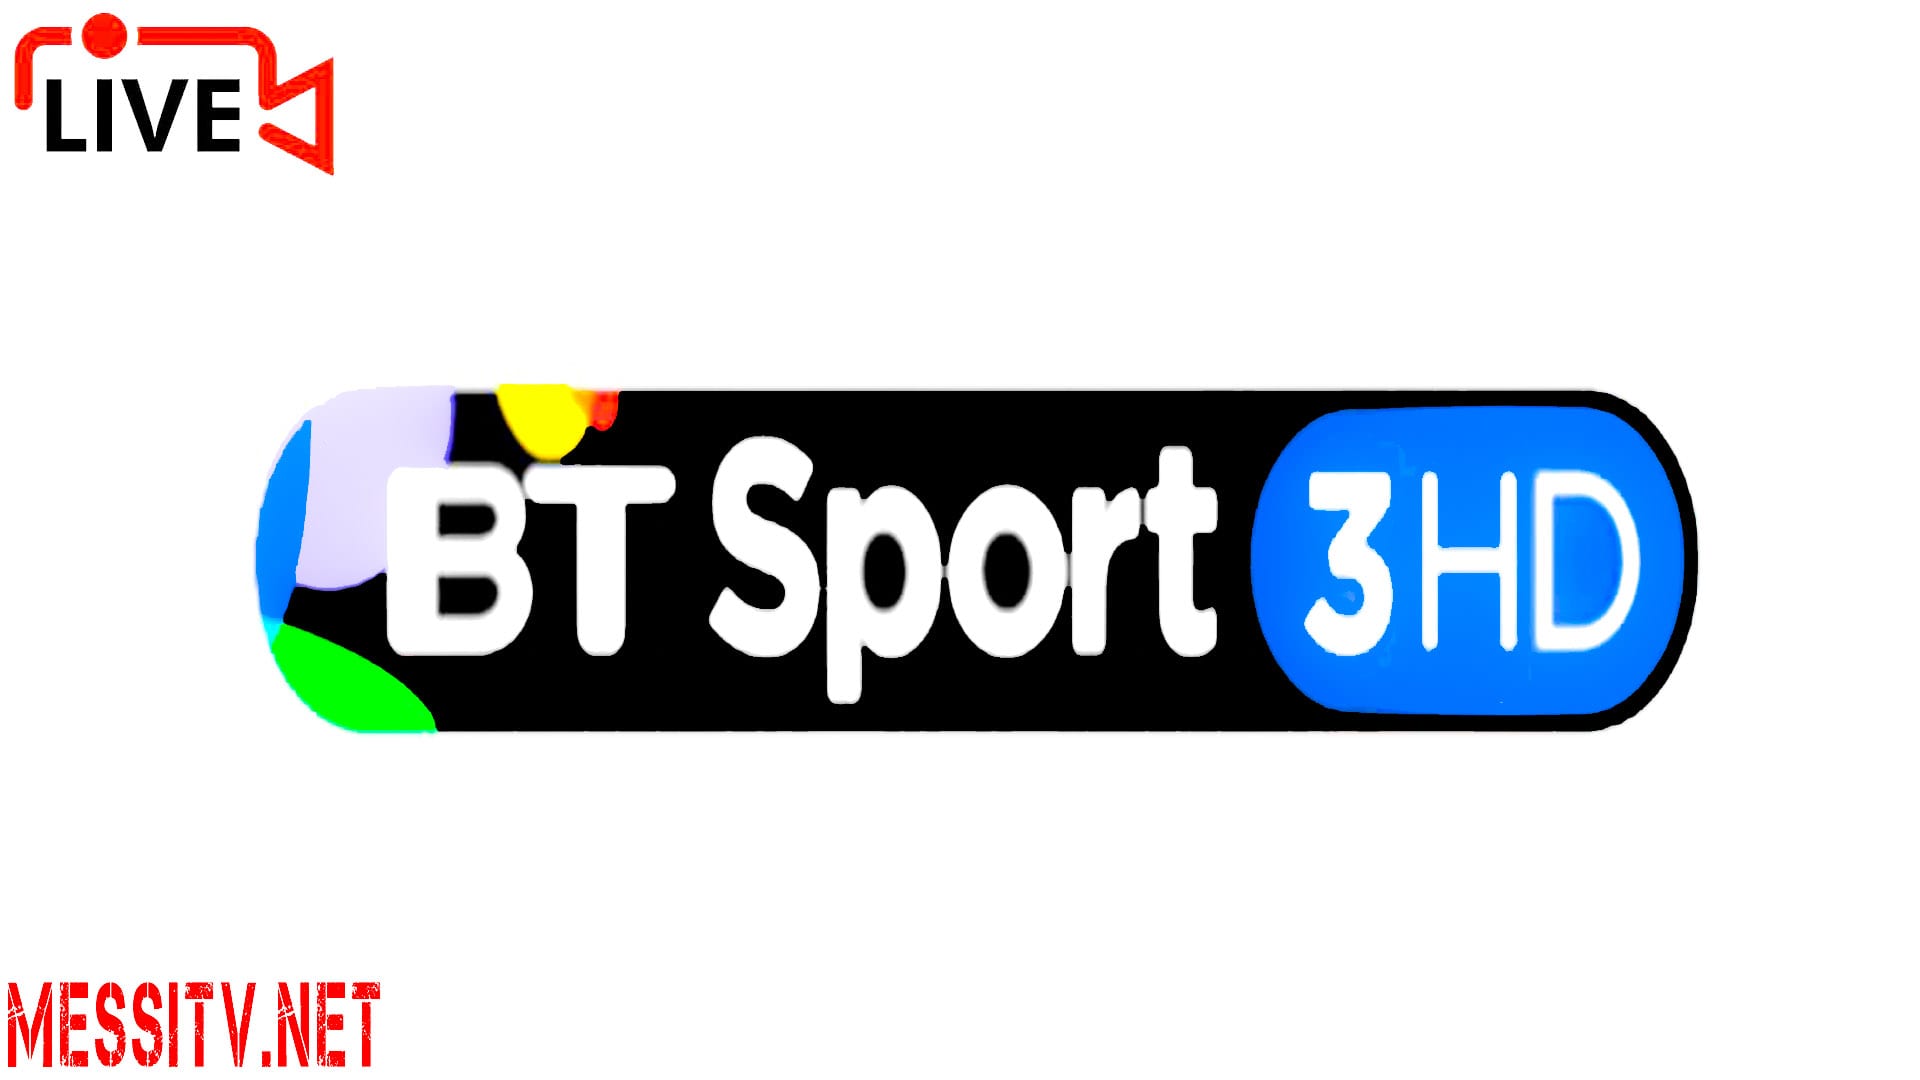 Bt Sport 3 Hd, Bt Sport 2 Hd, Bt Sport 1 Hd, Bt Sport Espn Hd, Watch Tv Live Online, Watch Uk Tv Live Online